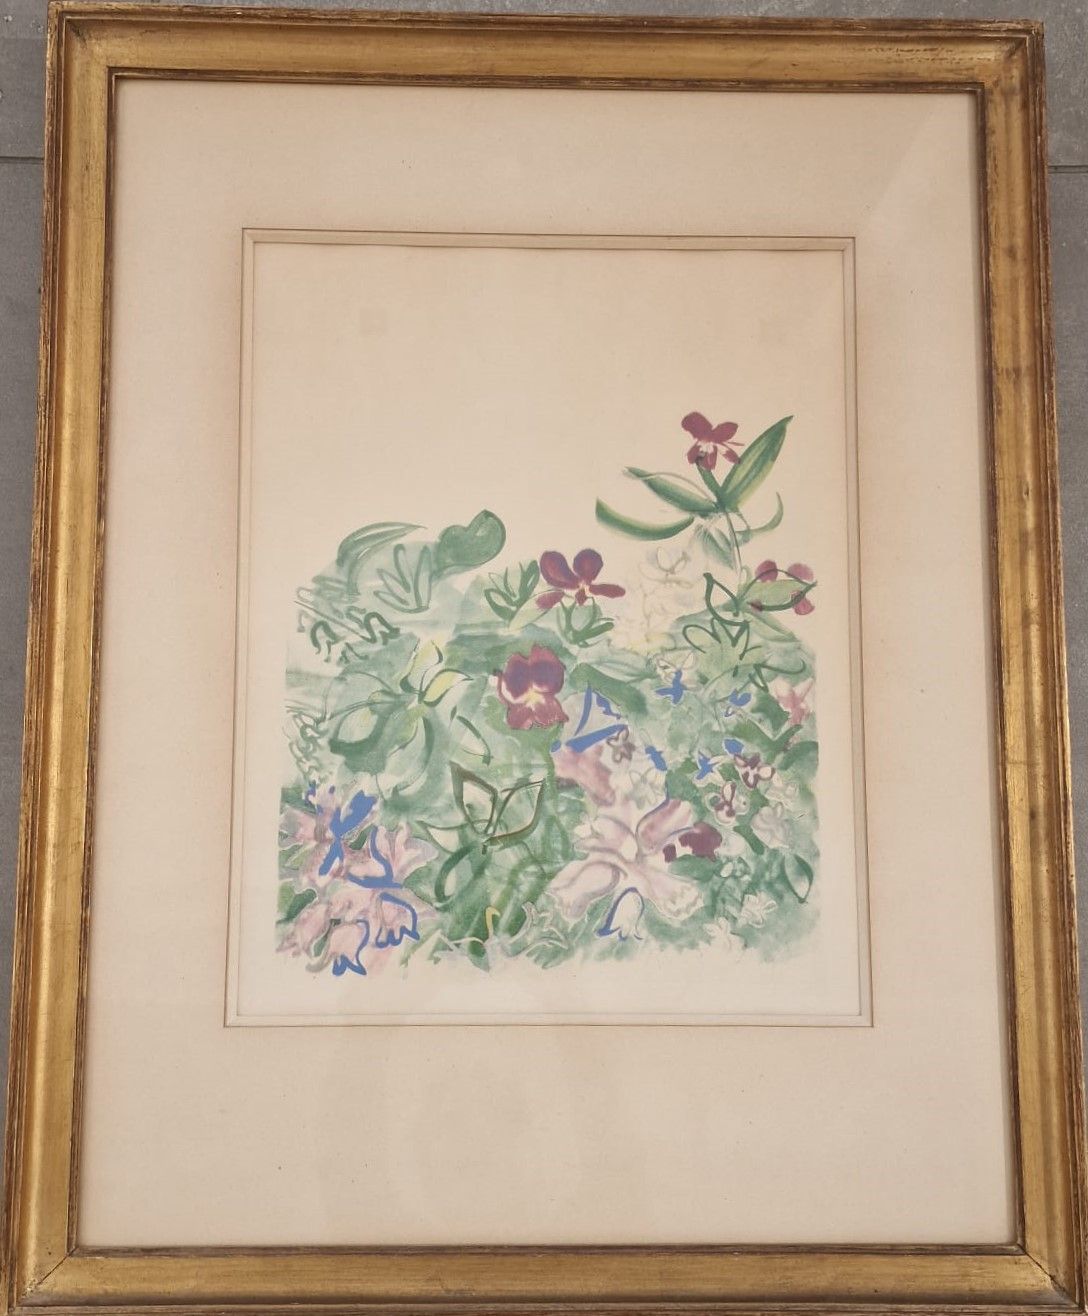 Null 拉乌尔-杜菲 (1877-1953)

鲜花

石版画

右下方有签名

38 x 30厘米